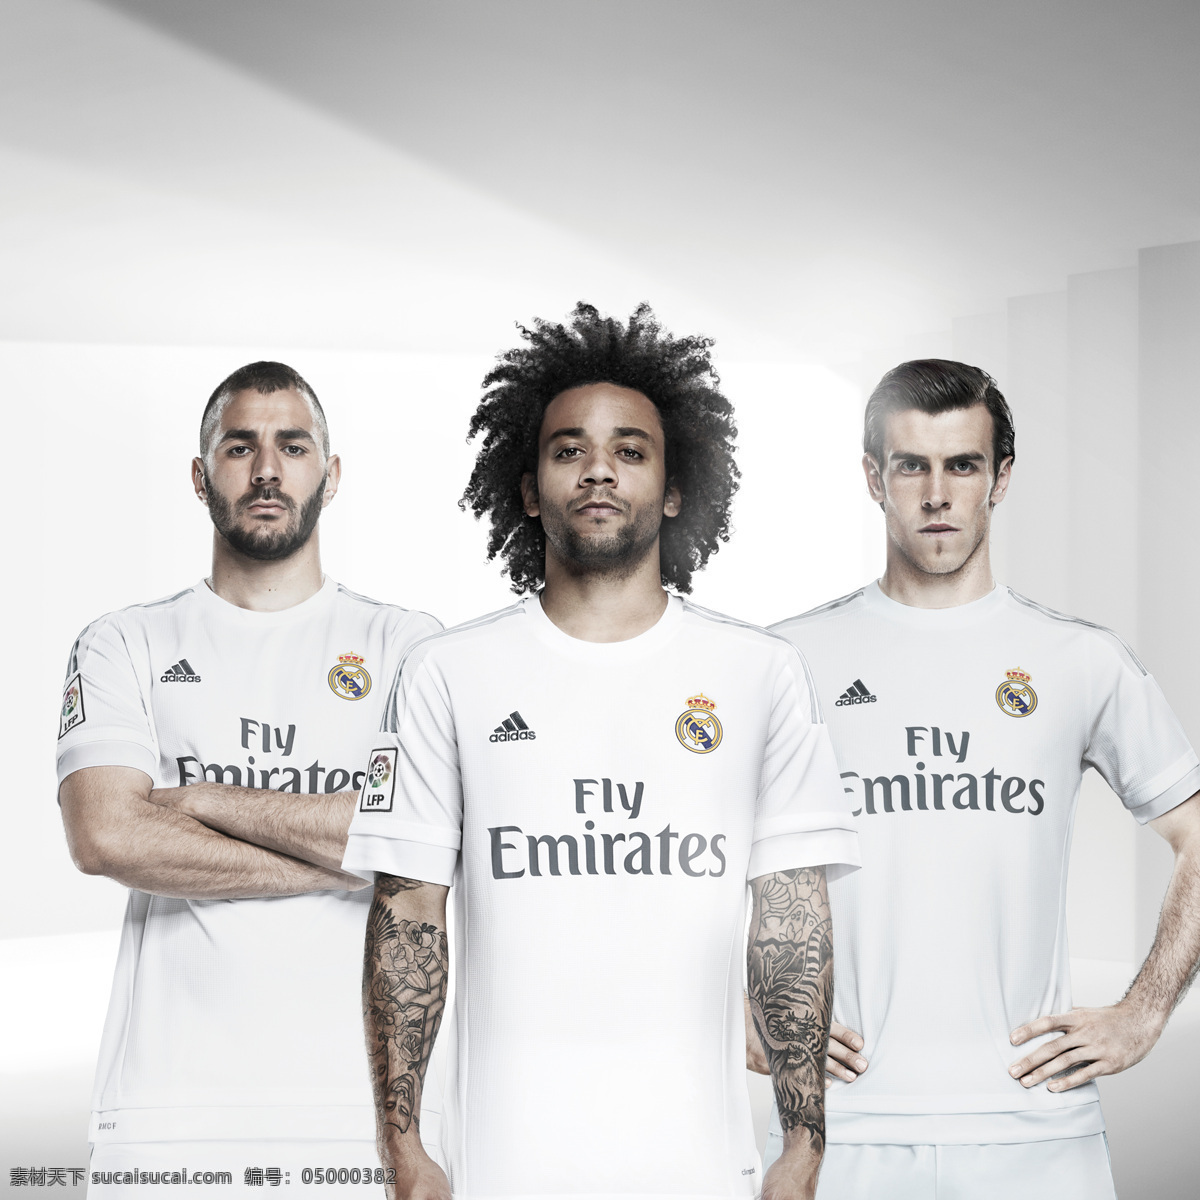 皇马 足球 俱乐部 队服 广告 adidas 足球俱乐部 宣传 文化艺术 体育运动